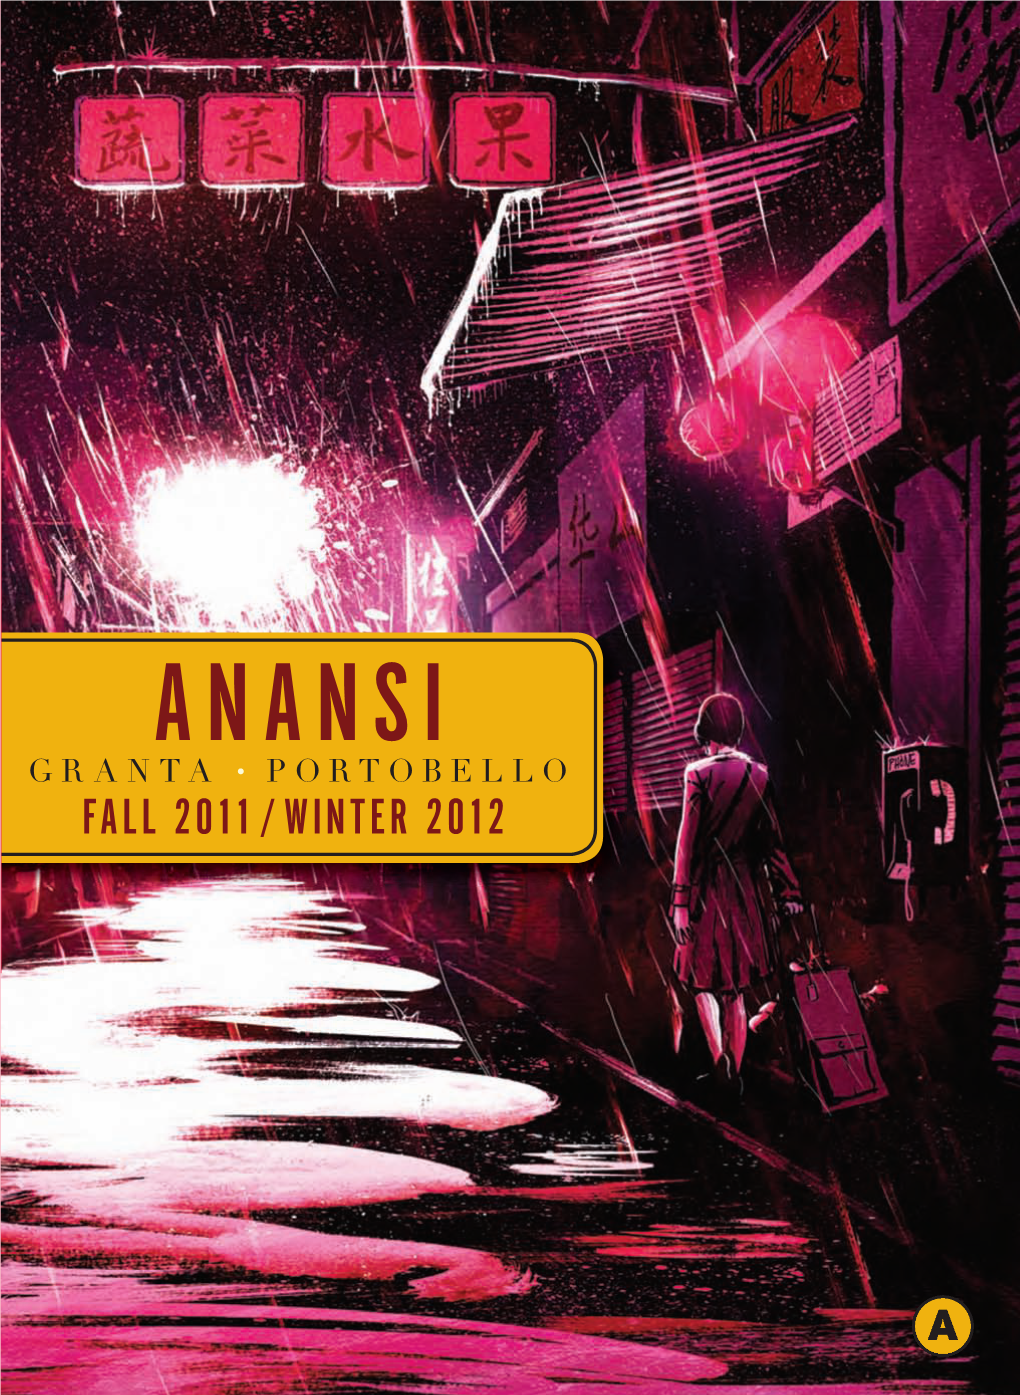 Anansi Fall 2011